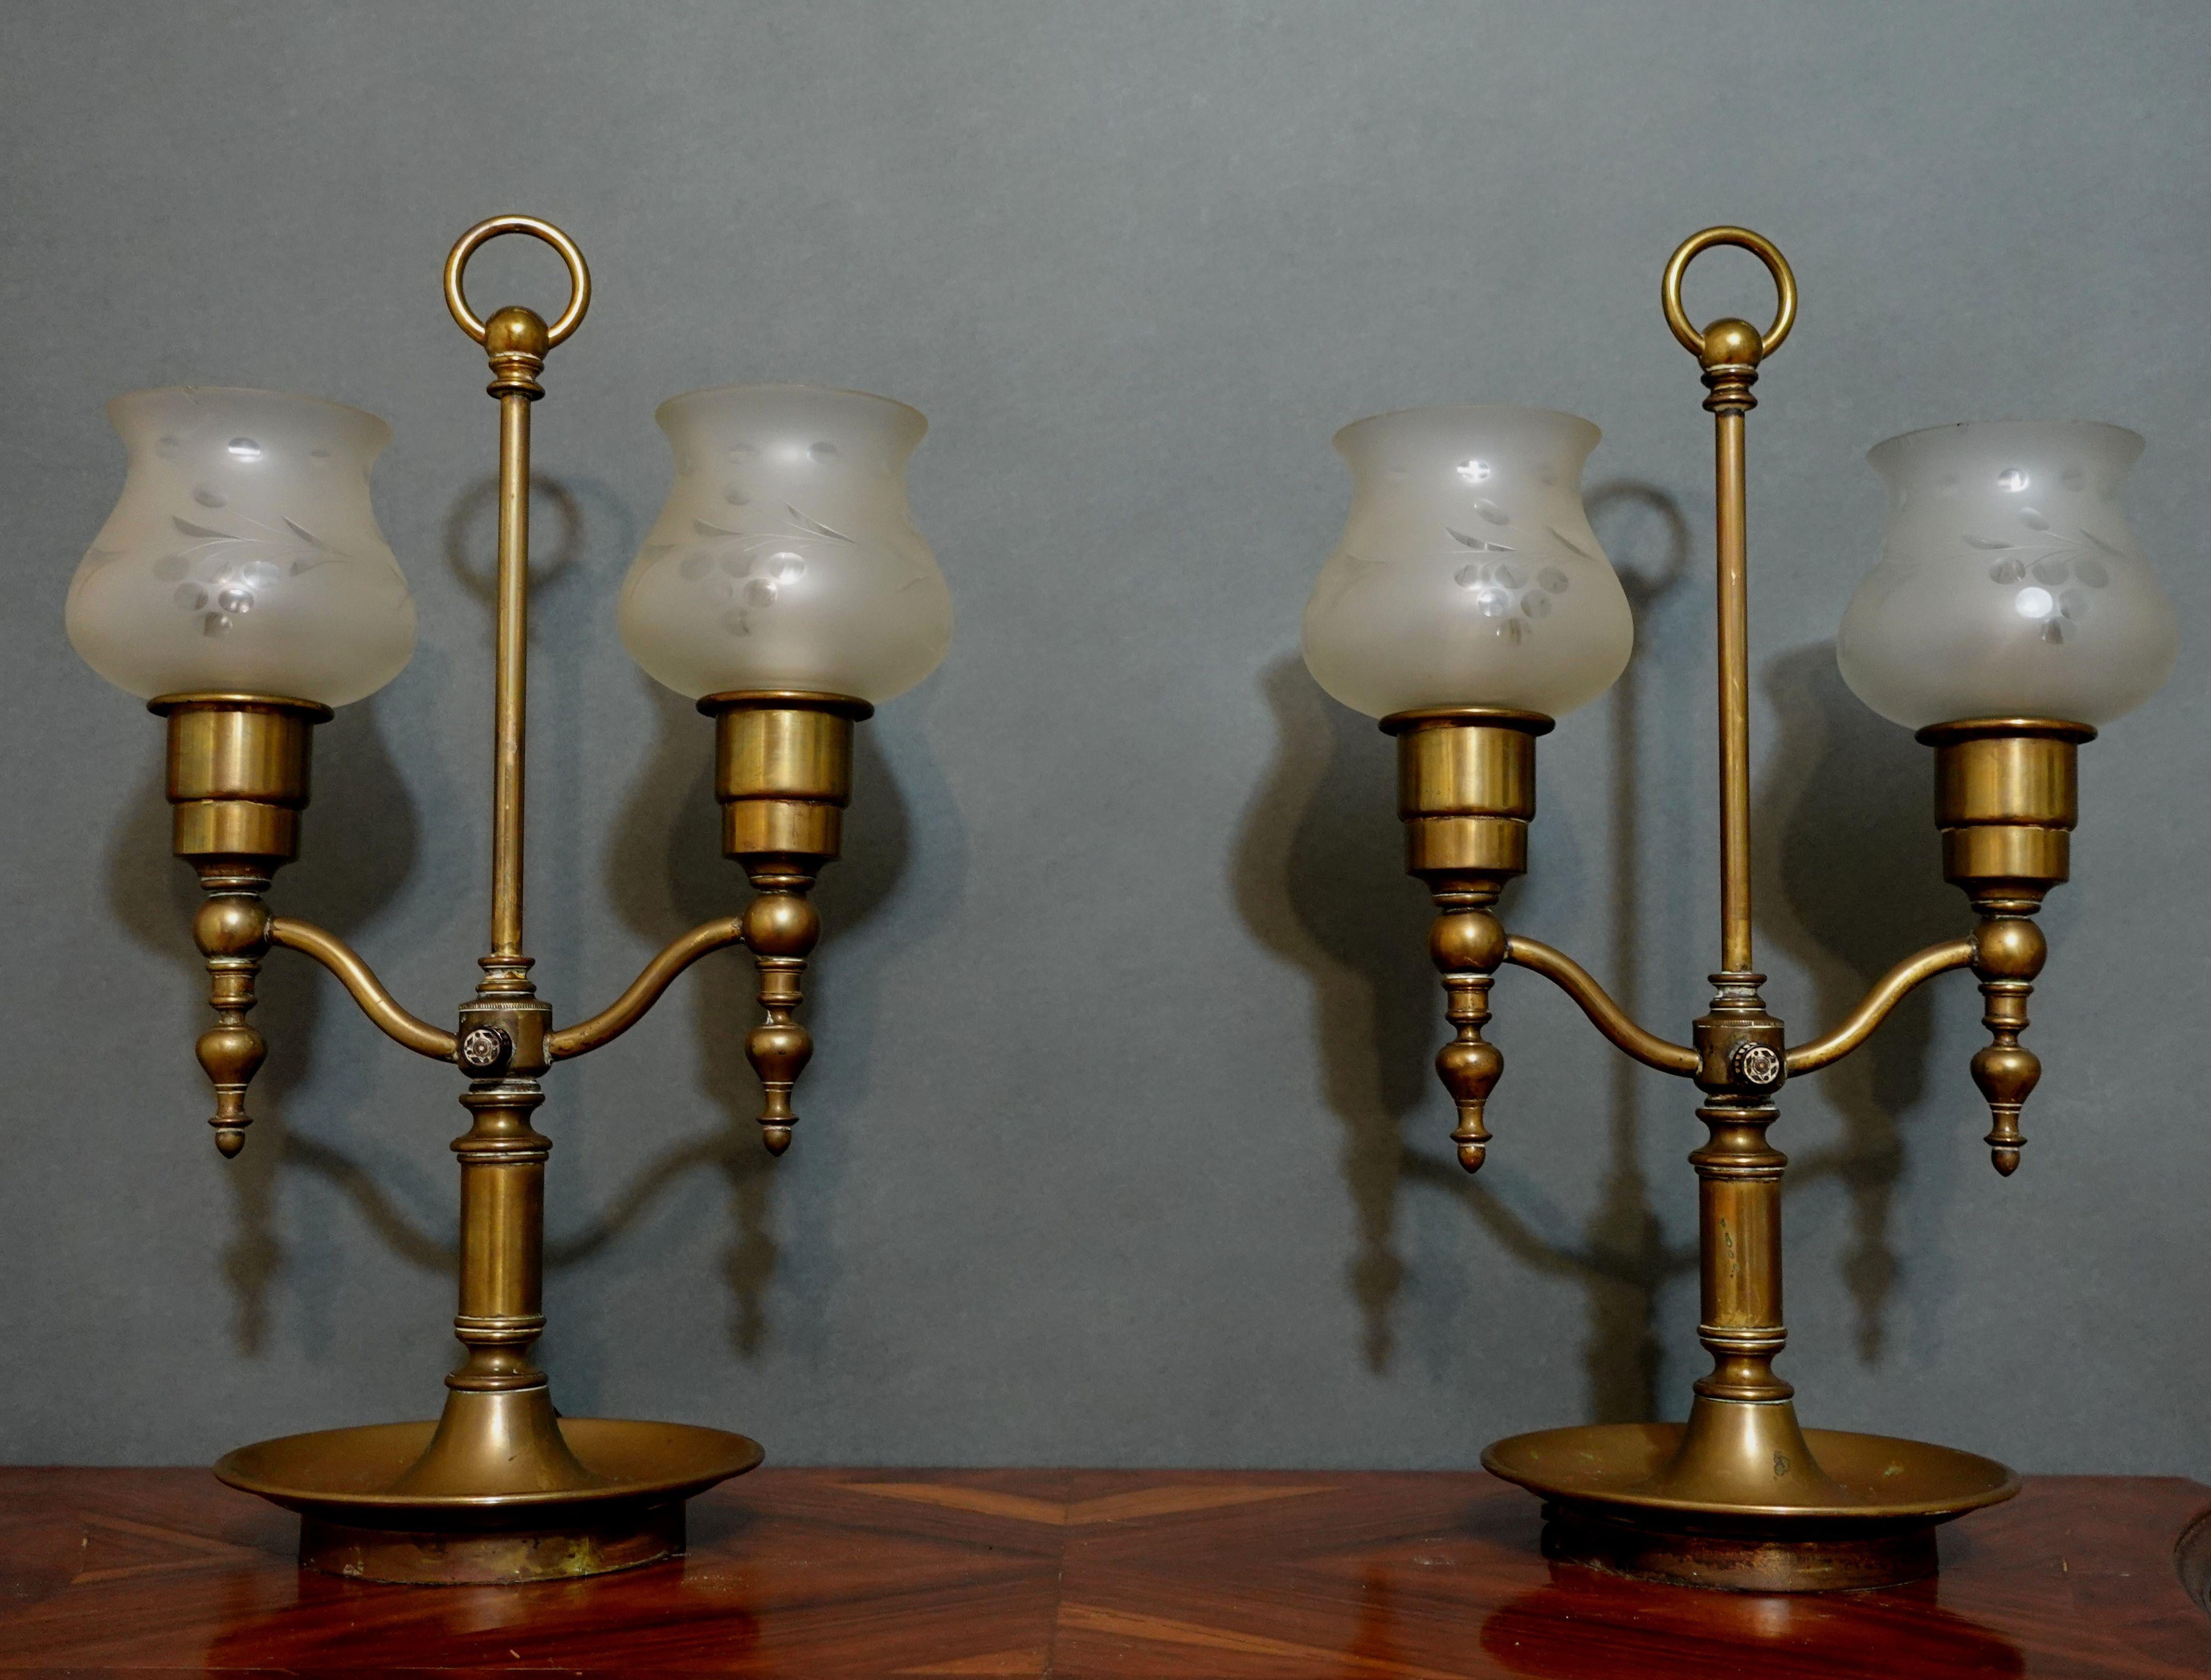 Vente de la belle antiquité, paire de grandes lampes hurricane en laiton à double bras de la fin du 19ème siècle au début du 20ème siècle. Les lampes sont accompagnées de 2 verres taillés avec des motifs floraux en forme de cercle très élégants,